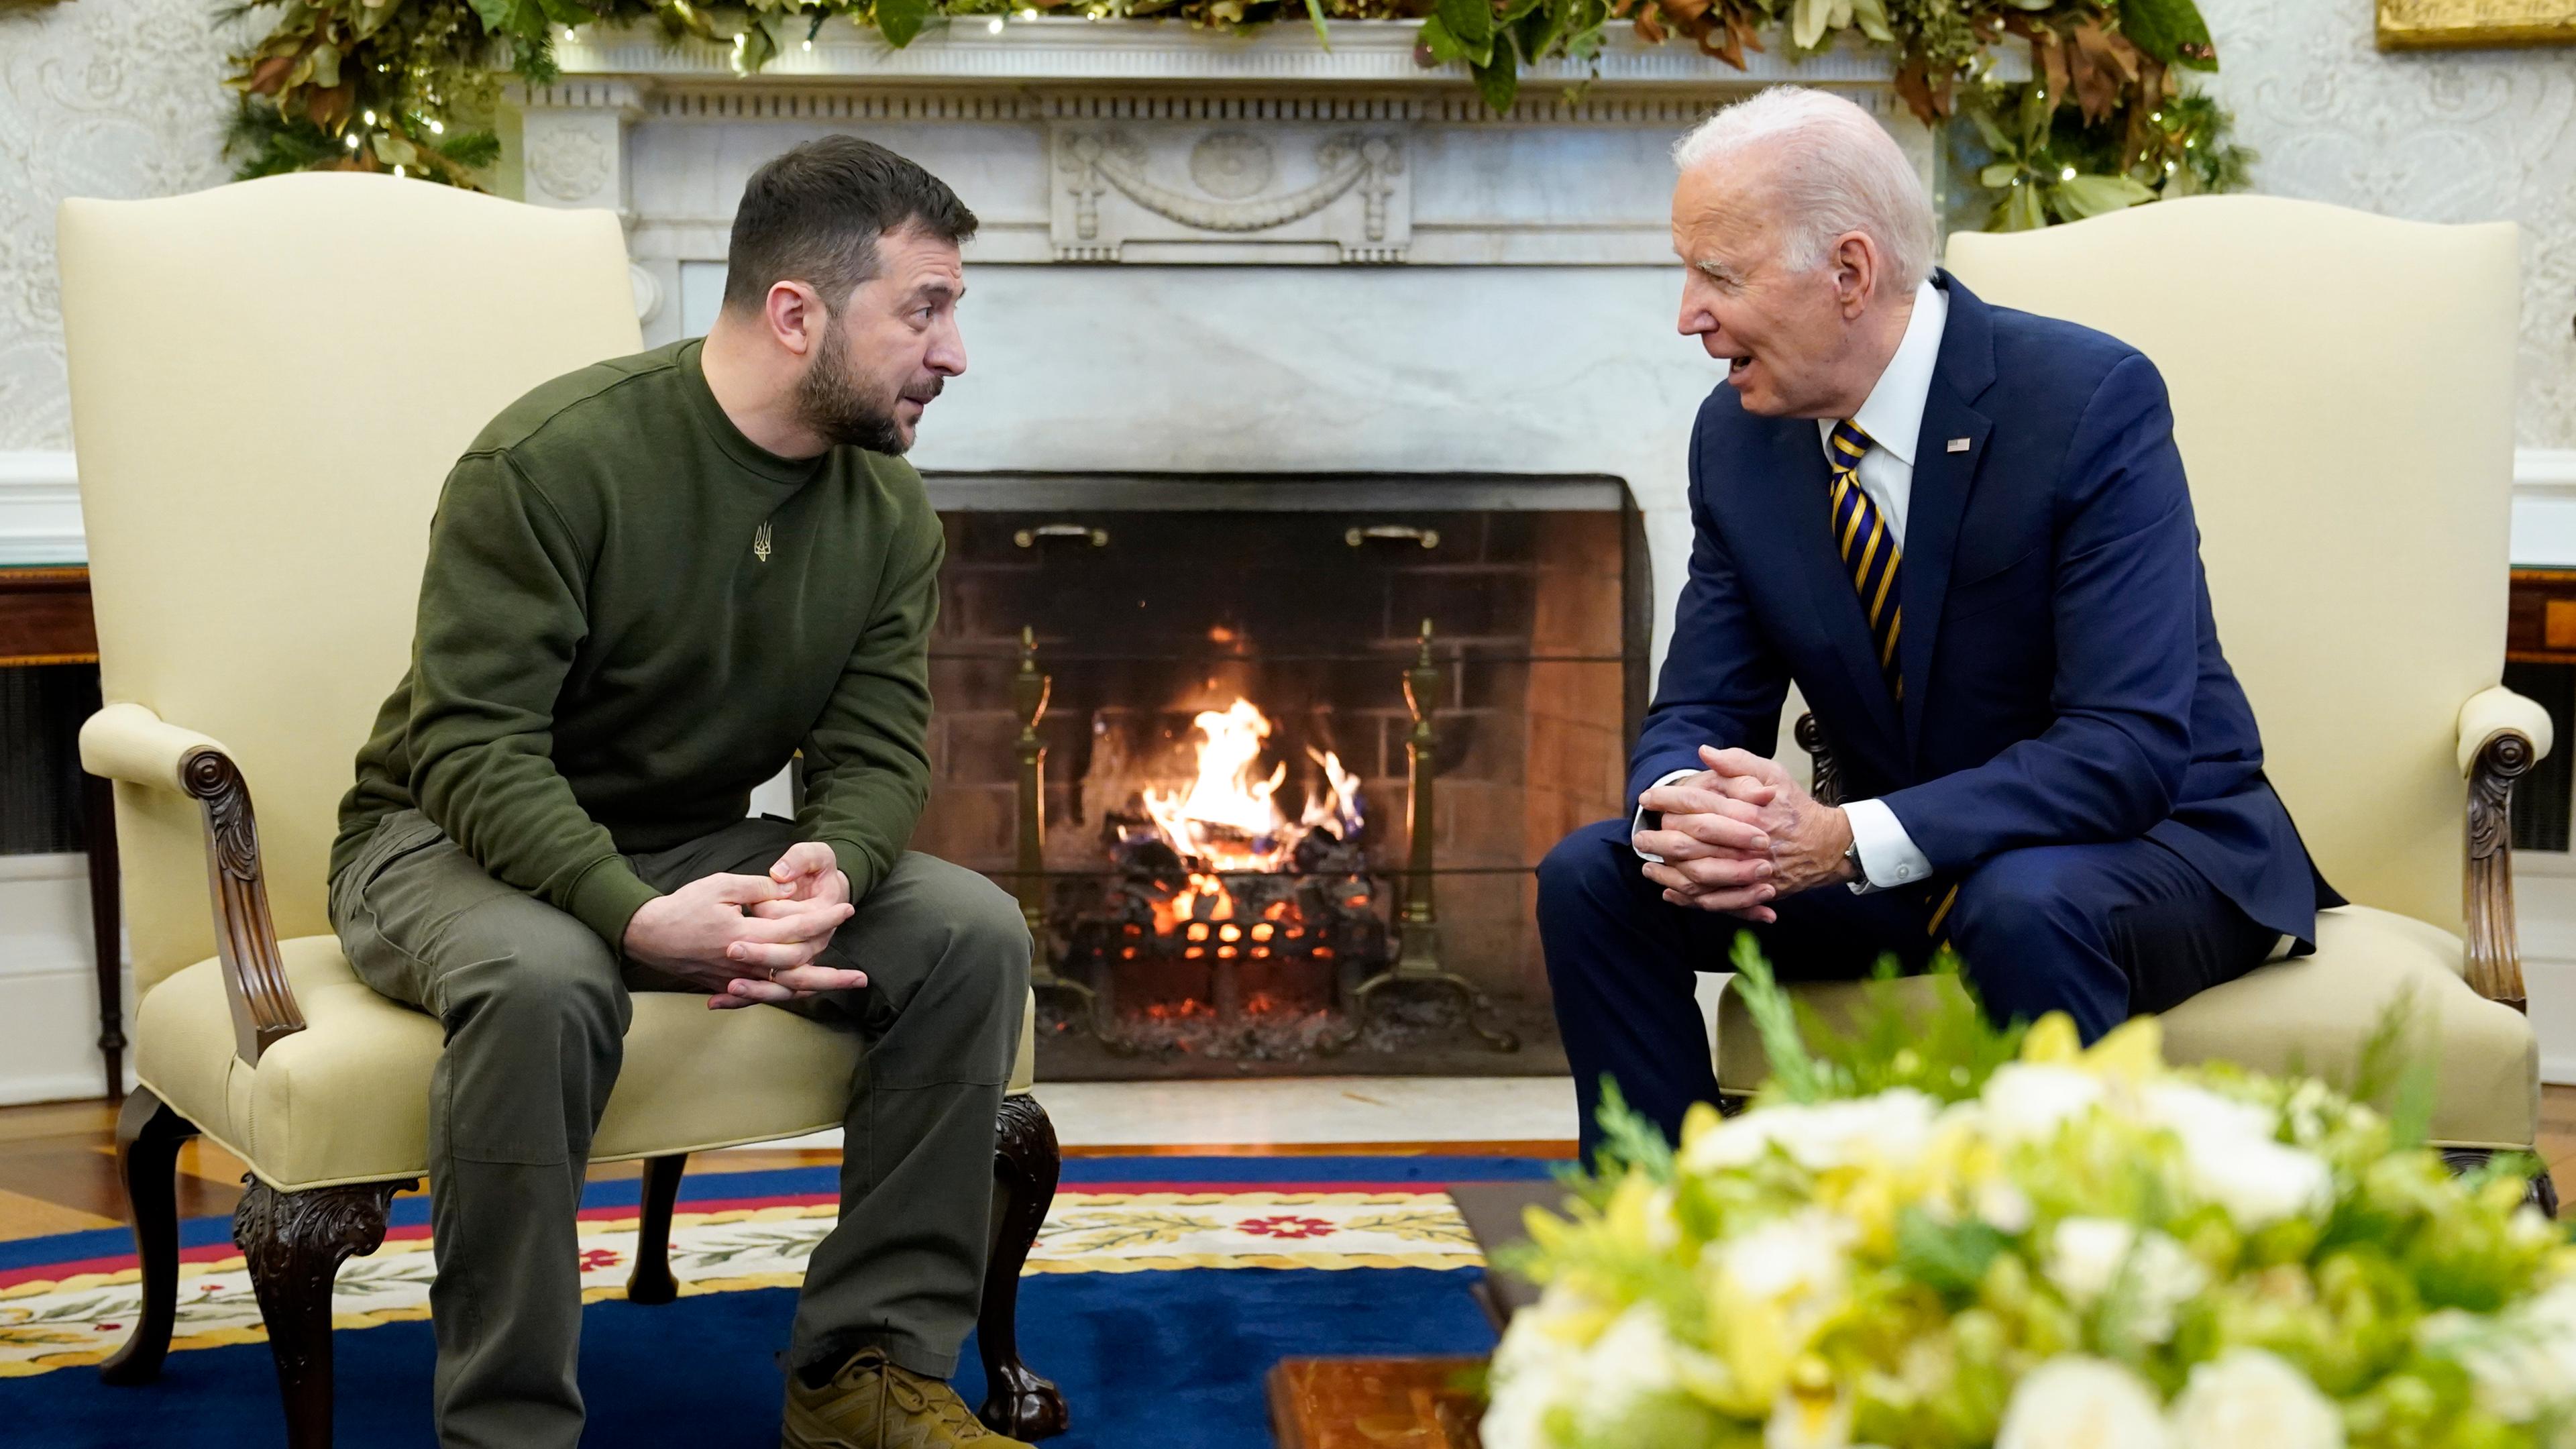 Der ukrainische Präsident Selenskyj sitzt neben seinem us-amerikanischen Amtskollegen in Sesseln vor einem Kamin. Sie unterhalten sich. 